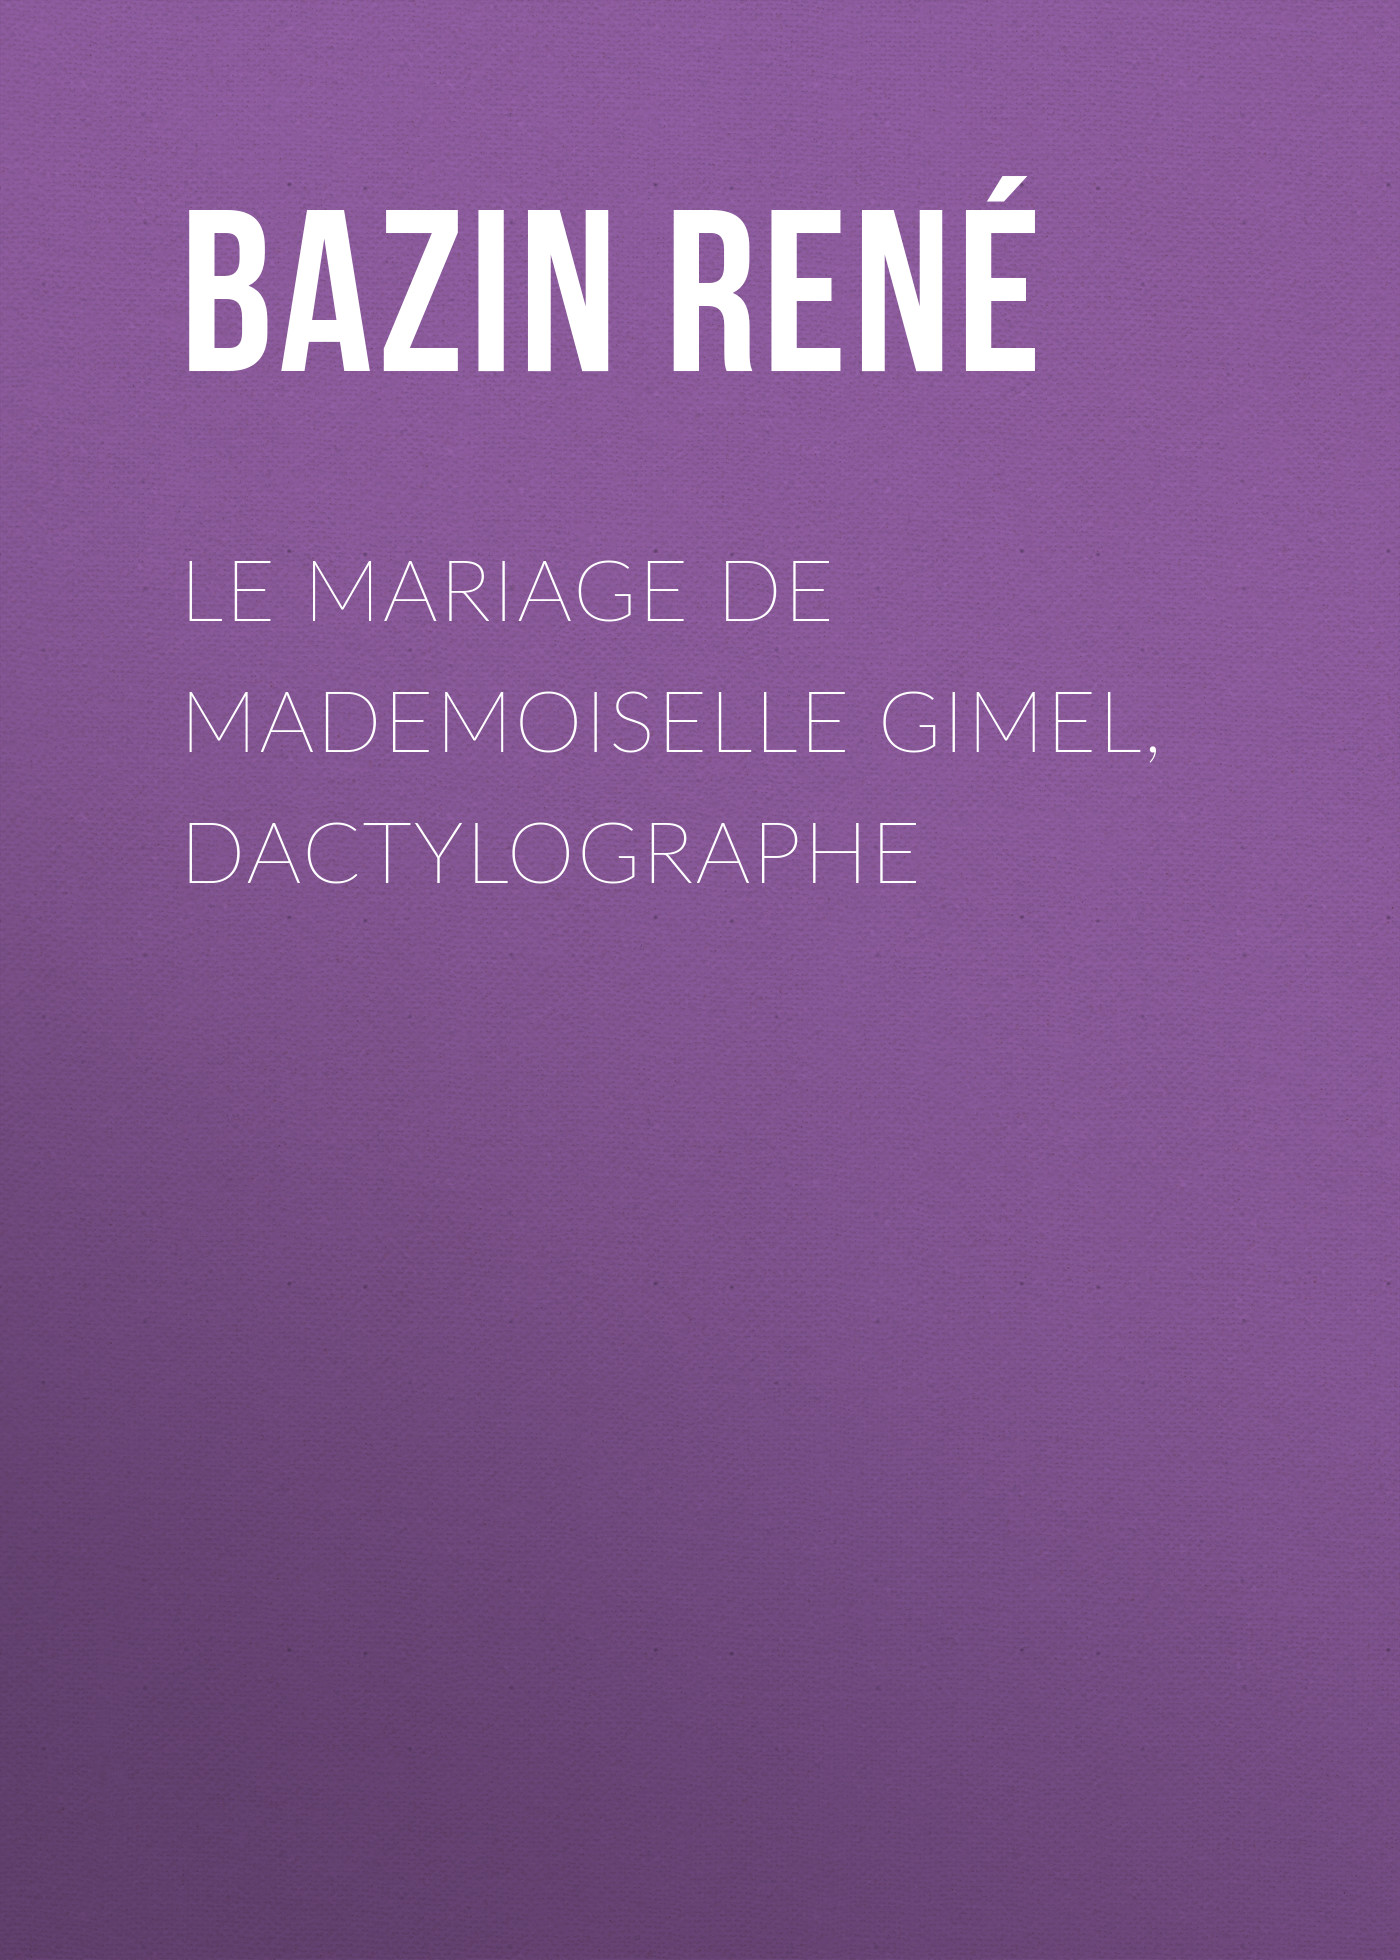 Книга Le Mariage de Mademoiselle Gimel, Dactylographe из серии , созданная René Bazin, может относится к жанру Зарубежная классика, Зарубежная старинная литература, Иностранные языки. Стоимость электронной книги Le Mariage de Mademoiselle Gimel, Dactylographe с идентификатором 24177684 составляет 0.90 руб.